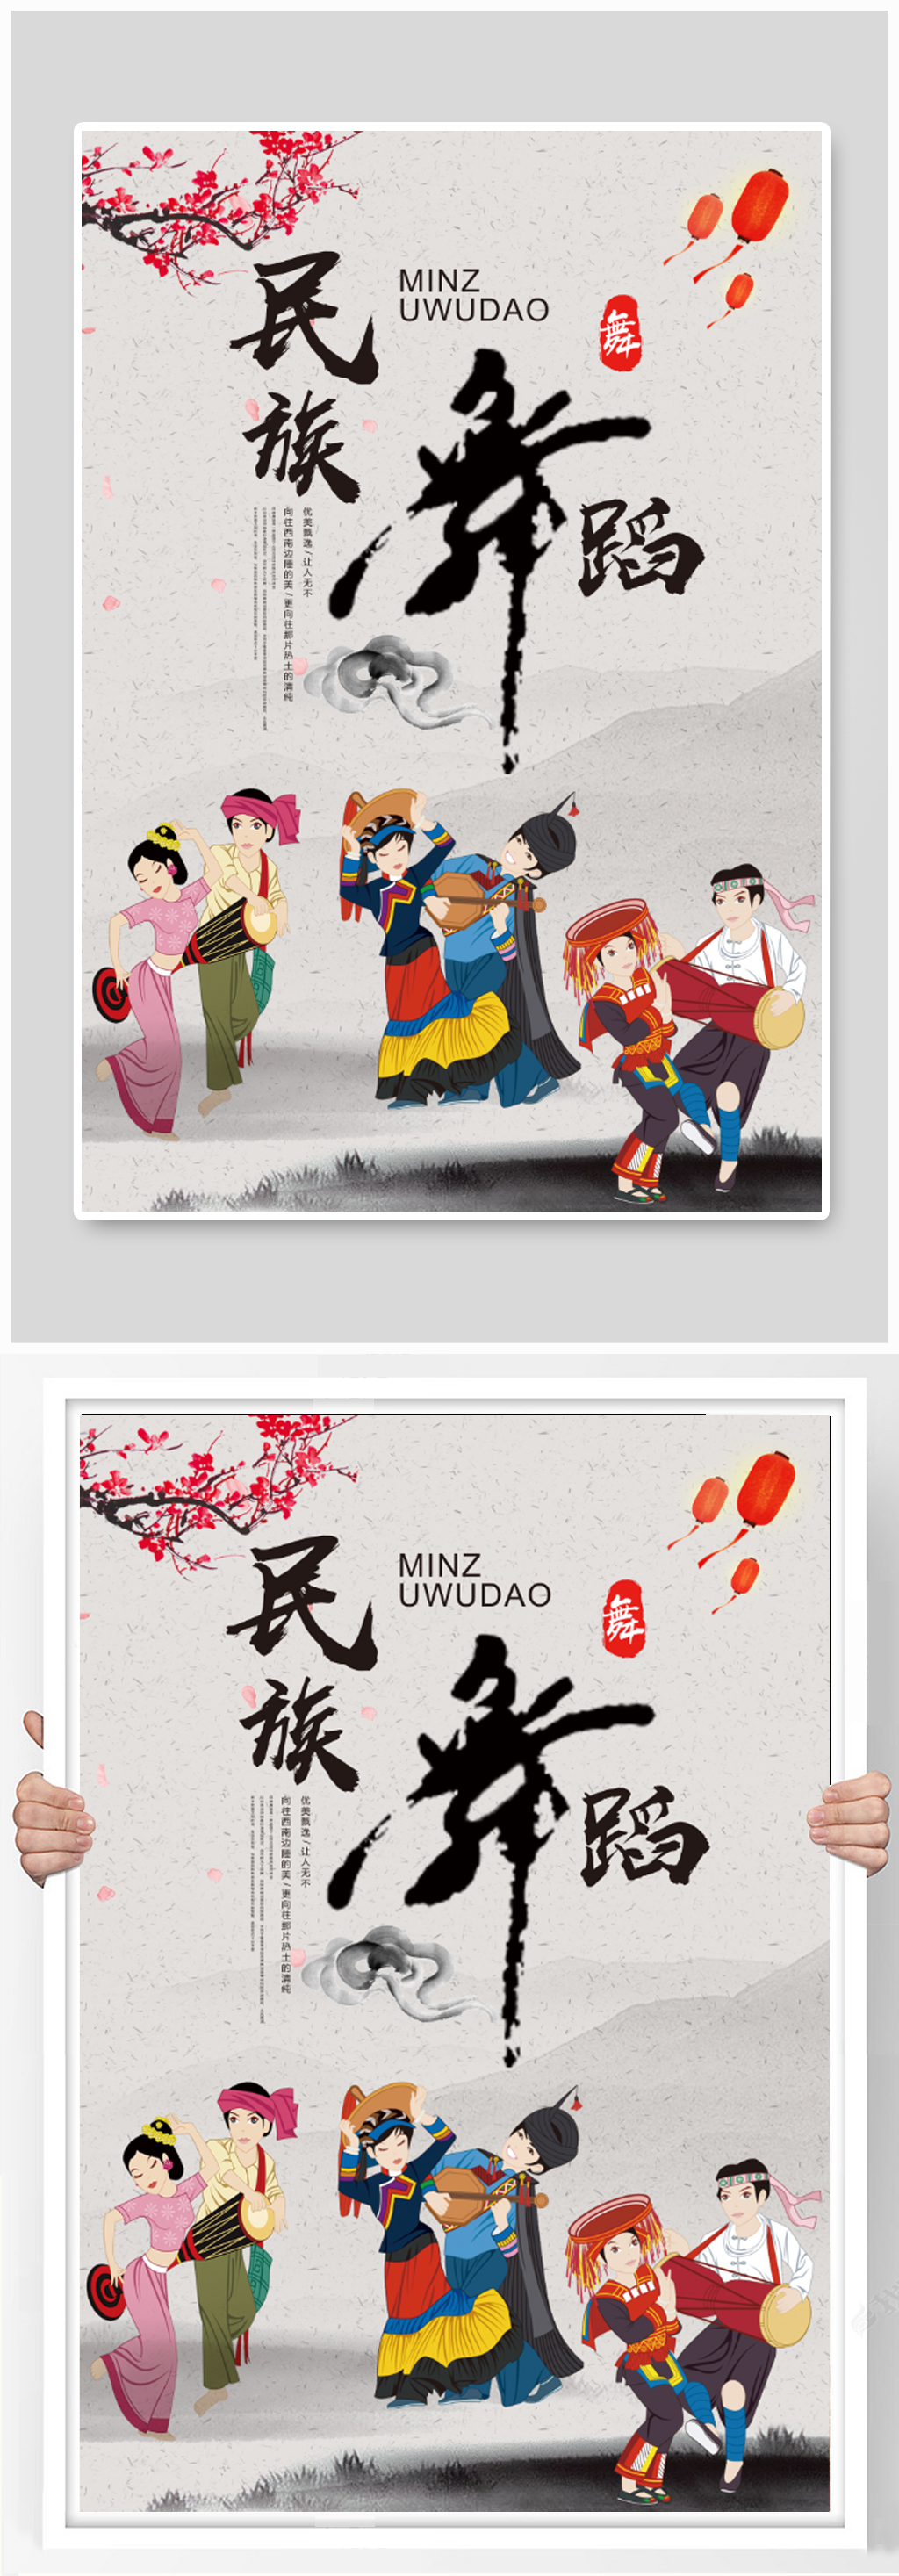 立即下载传统民族舞舞蹈海报设计立即下载传统文化民族舞海报立即下载